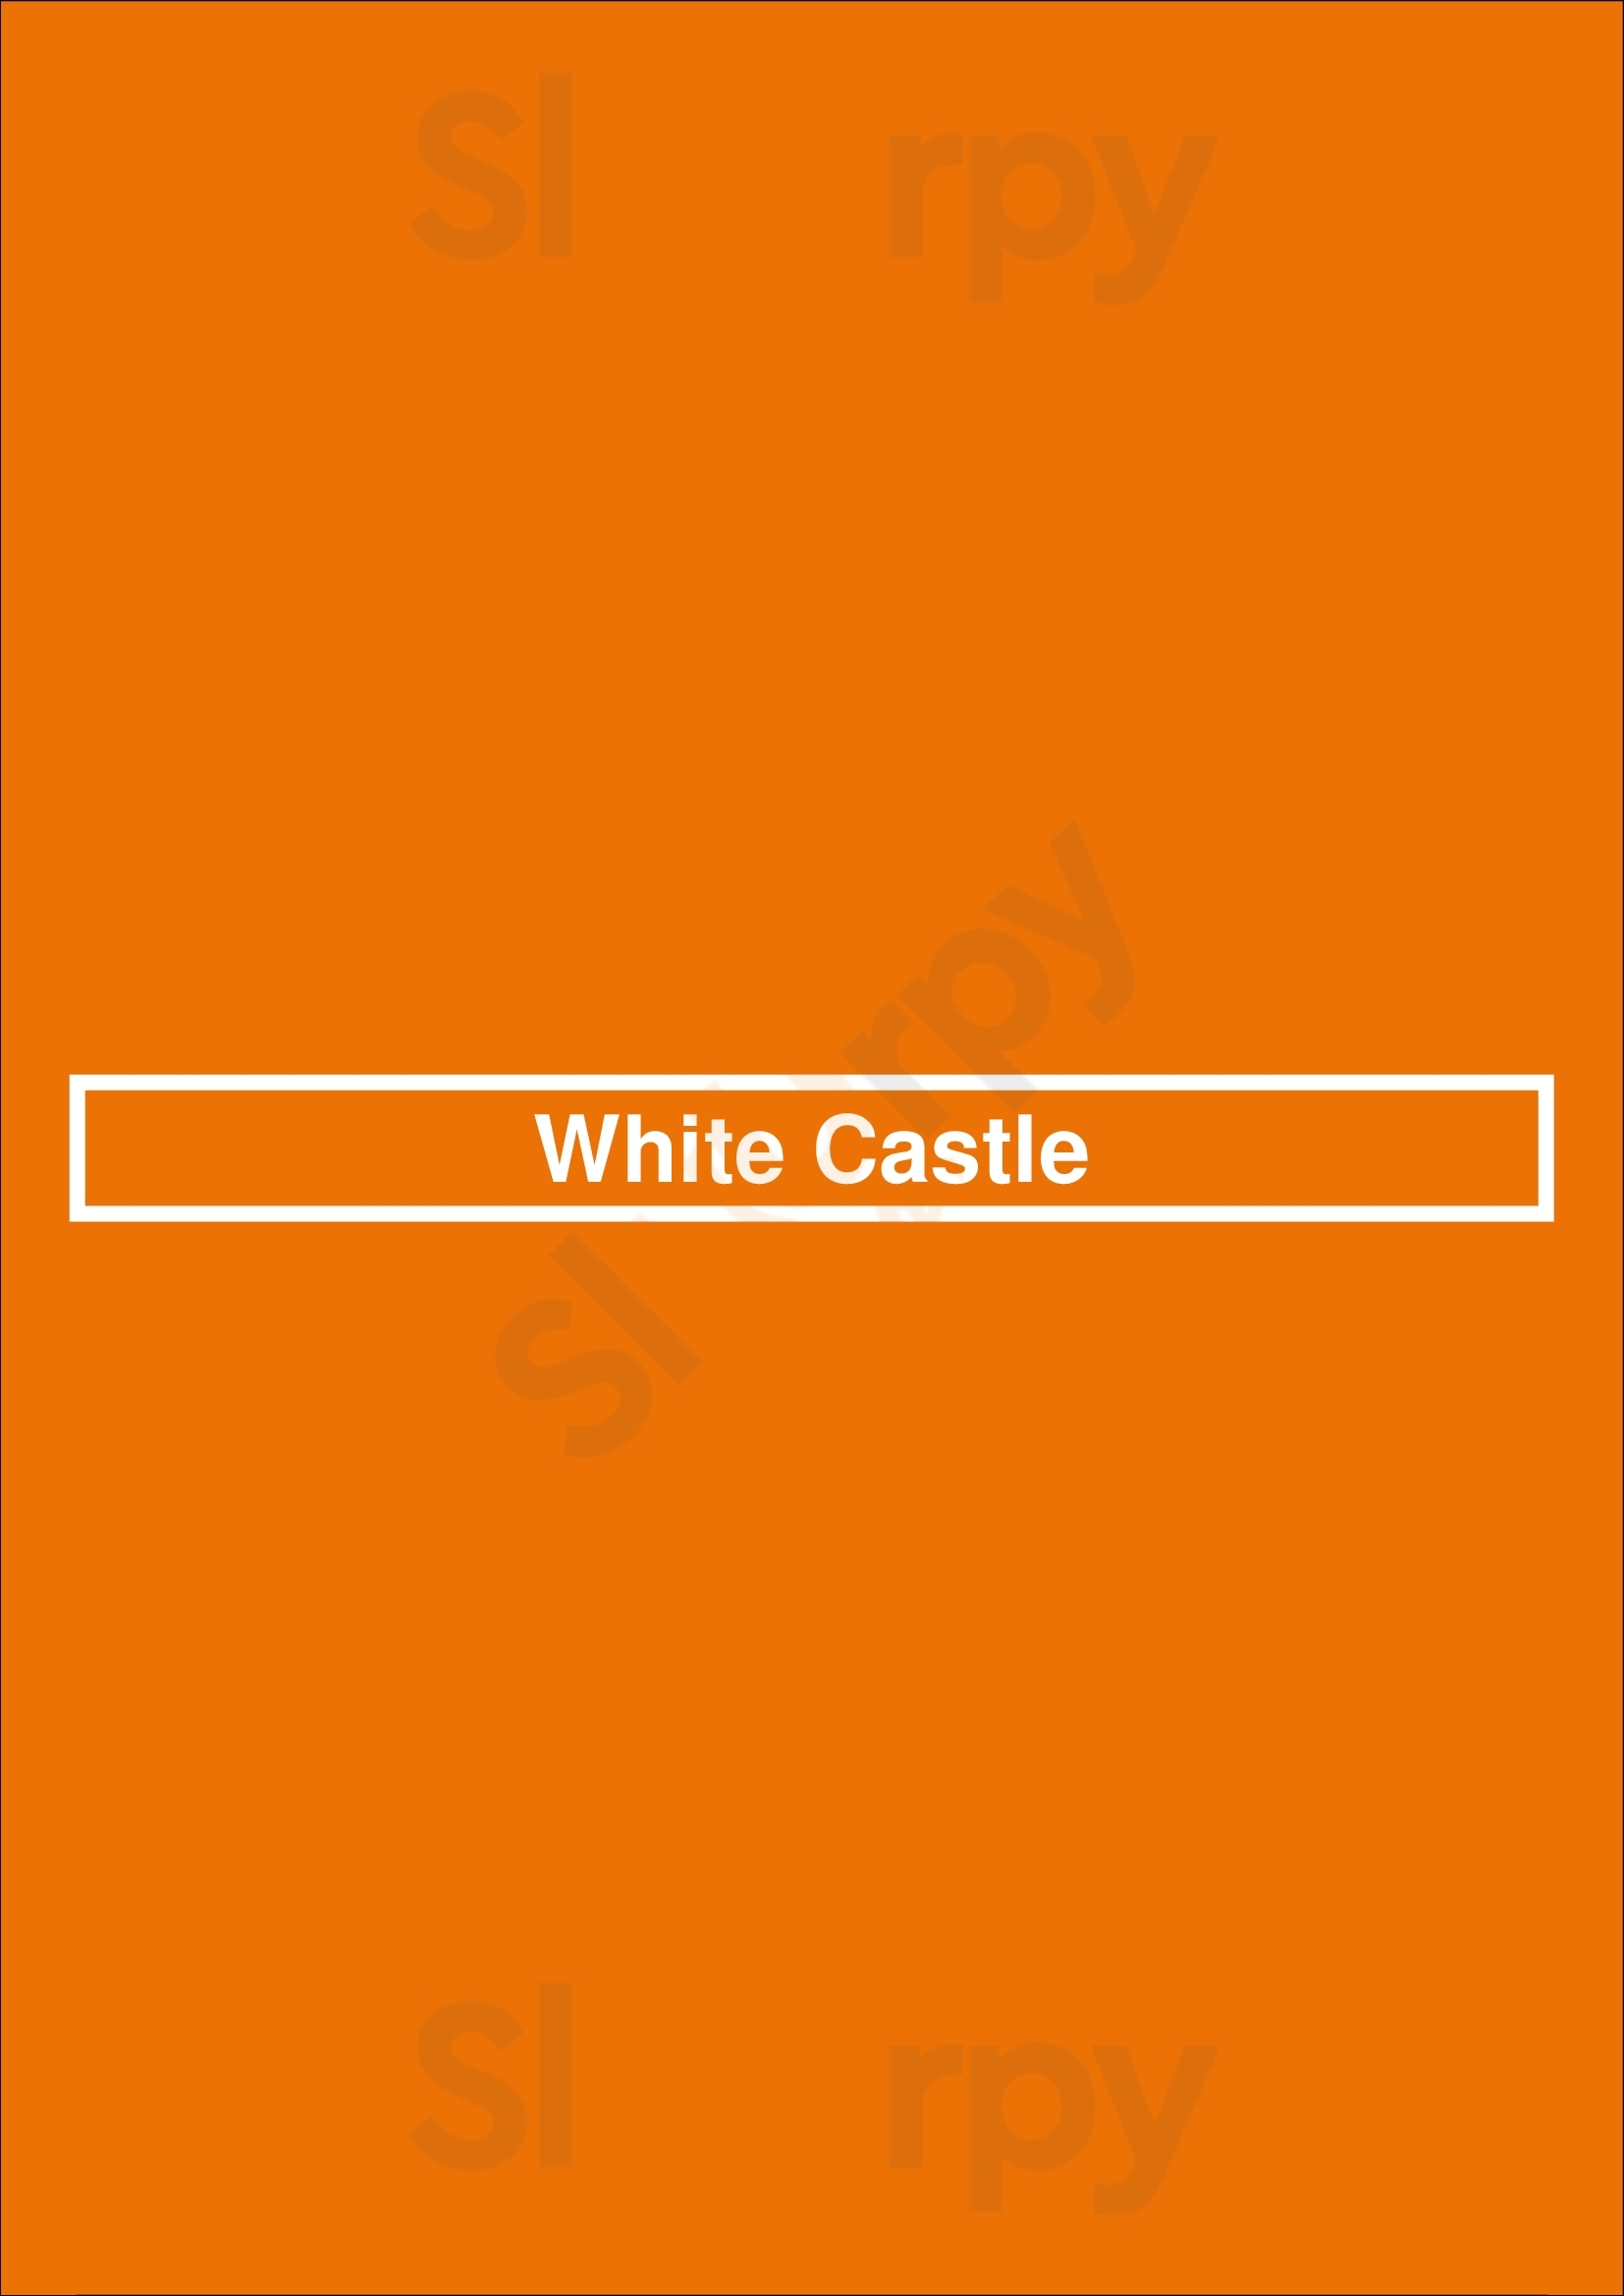 White Castle Lafayette Menu - 1